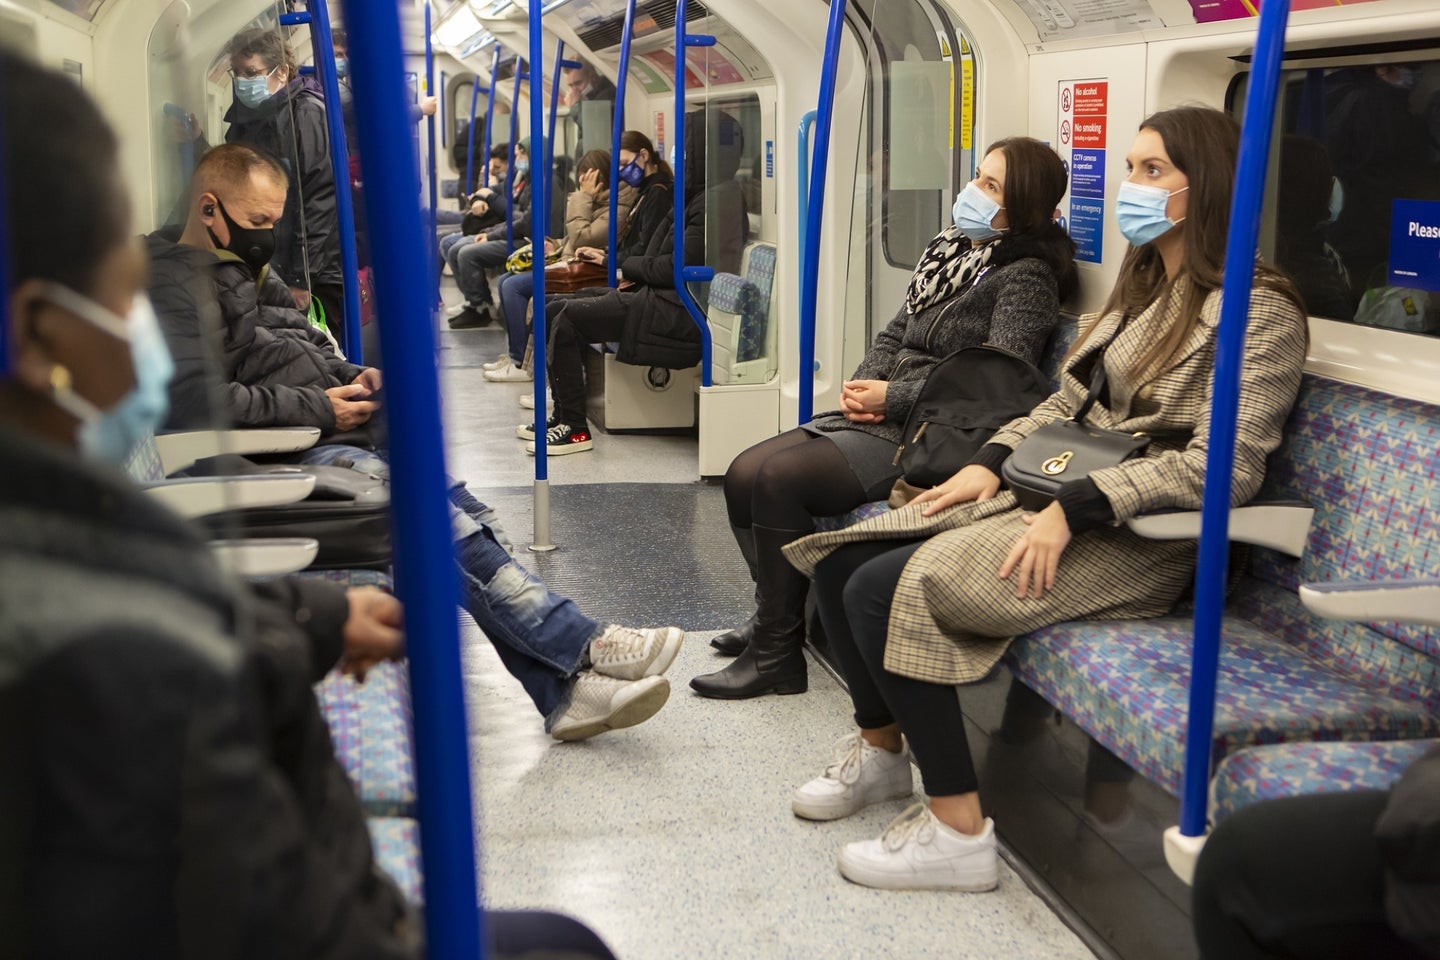 People wear COVID masks in on public transportation